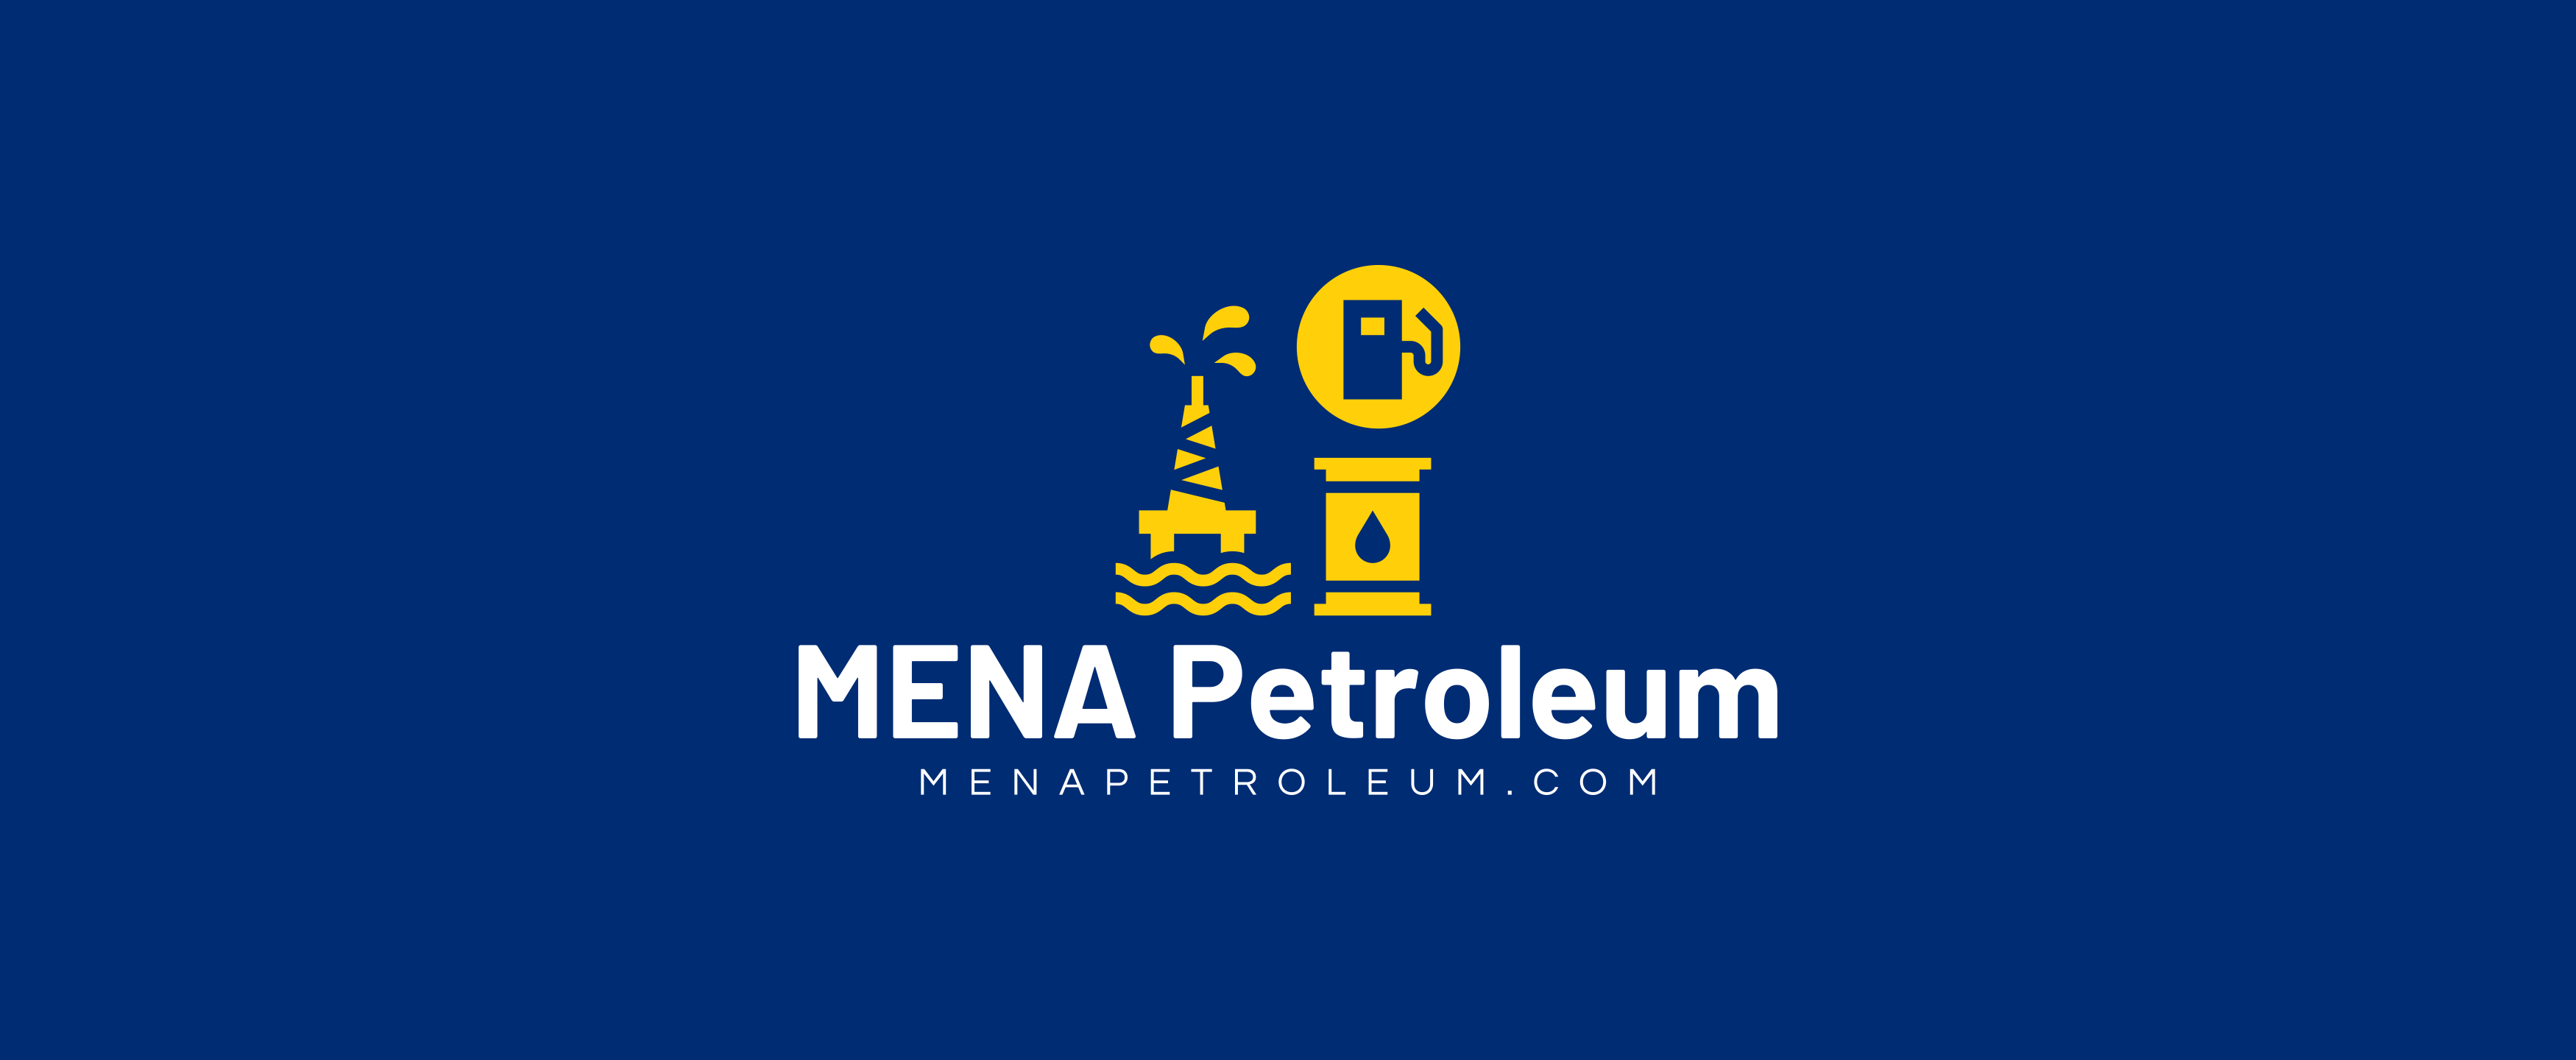 MENA Petroleum